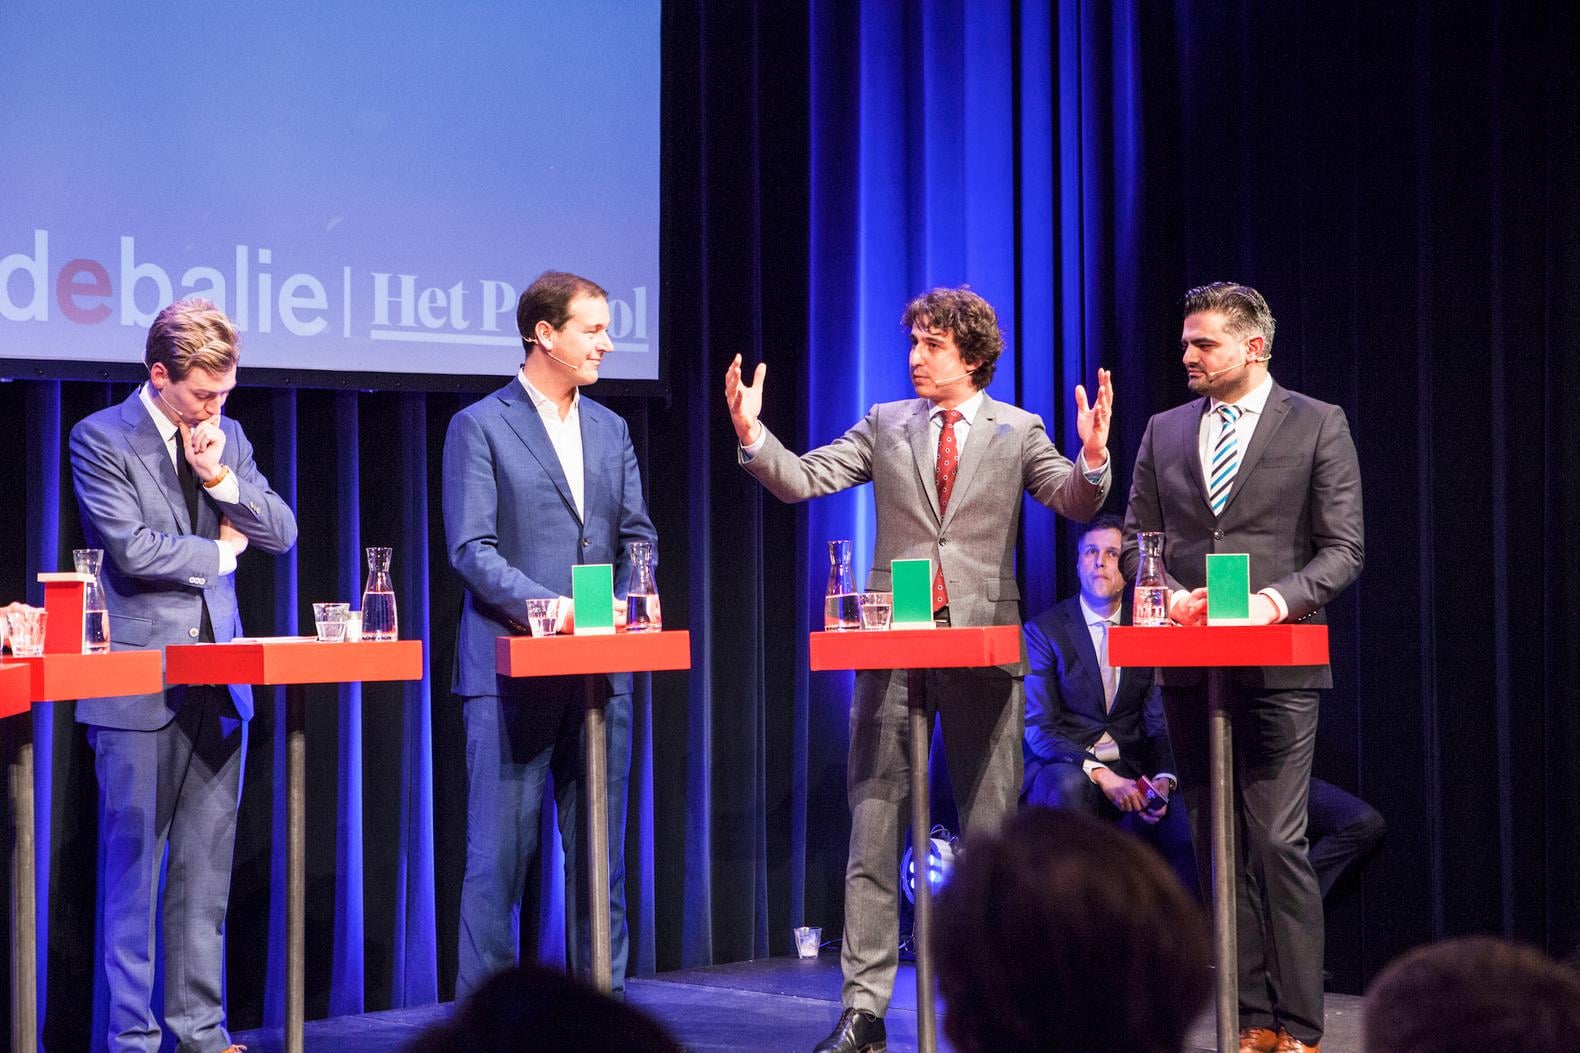 Leve Amsterdam: debat met Haagse kopstukken